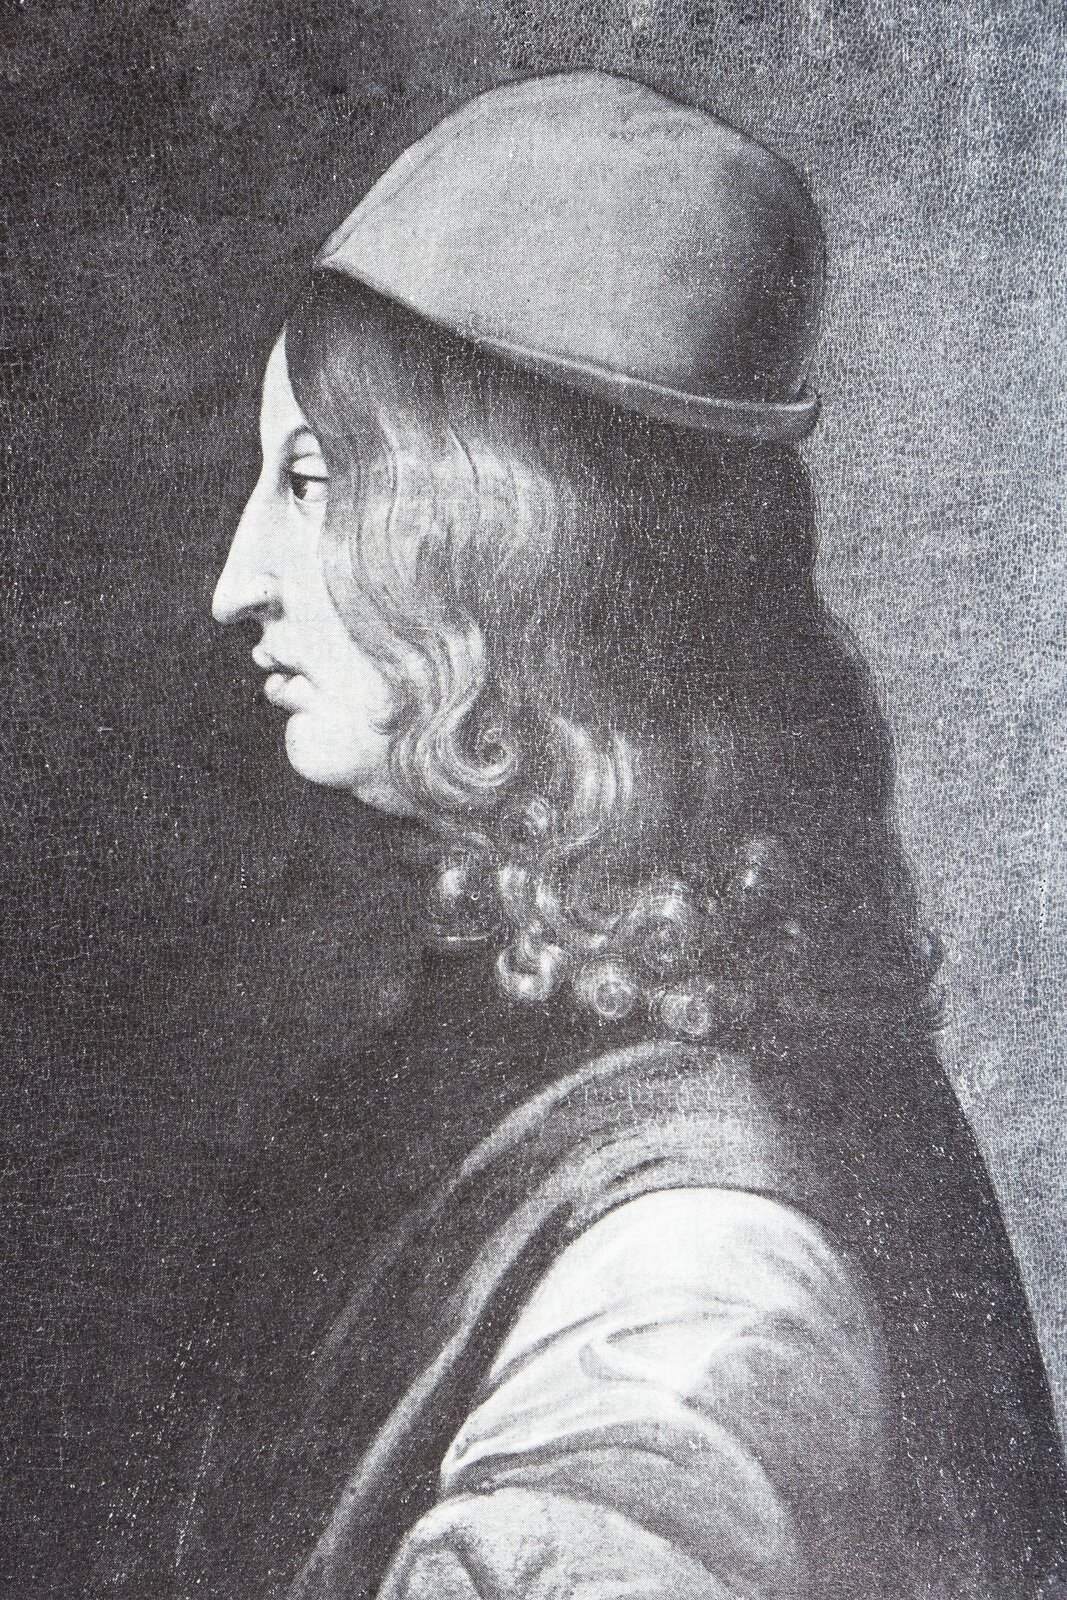 Czarno-biały portret nieznanego autora przedstawia wizerunek filozofa Gianfrancesco Pico della Mirandoli – młodego mężczyzny o długich jasnych włosach. Portret został wykonany z profilu. Na głowie ma czapkę.